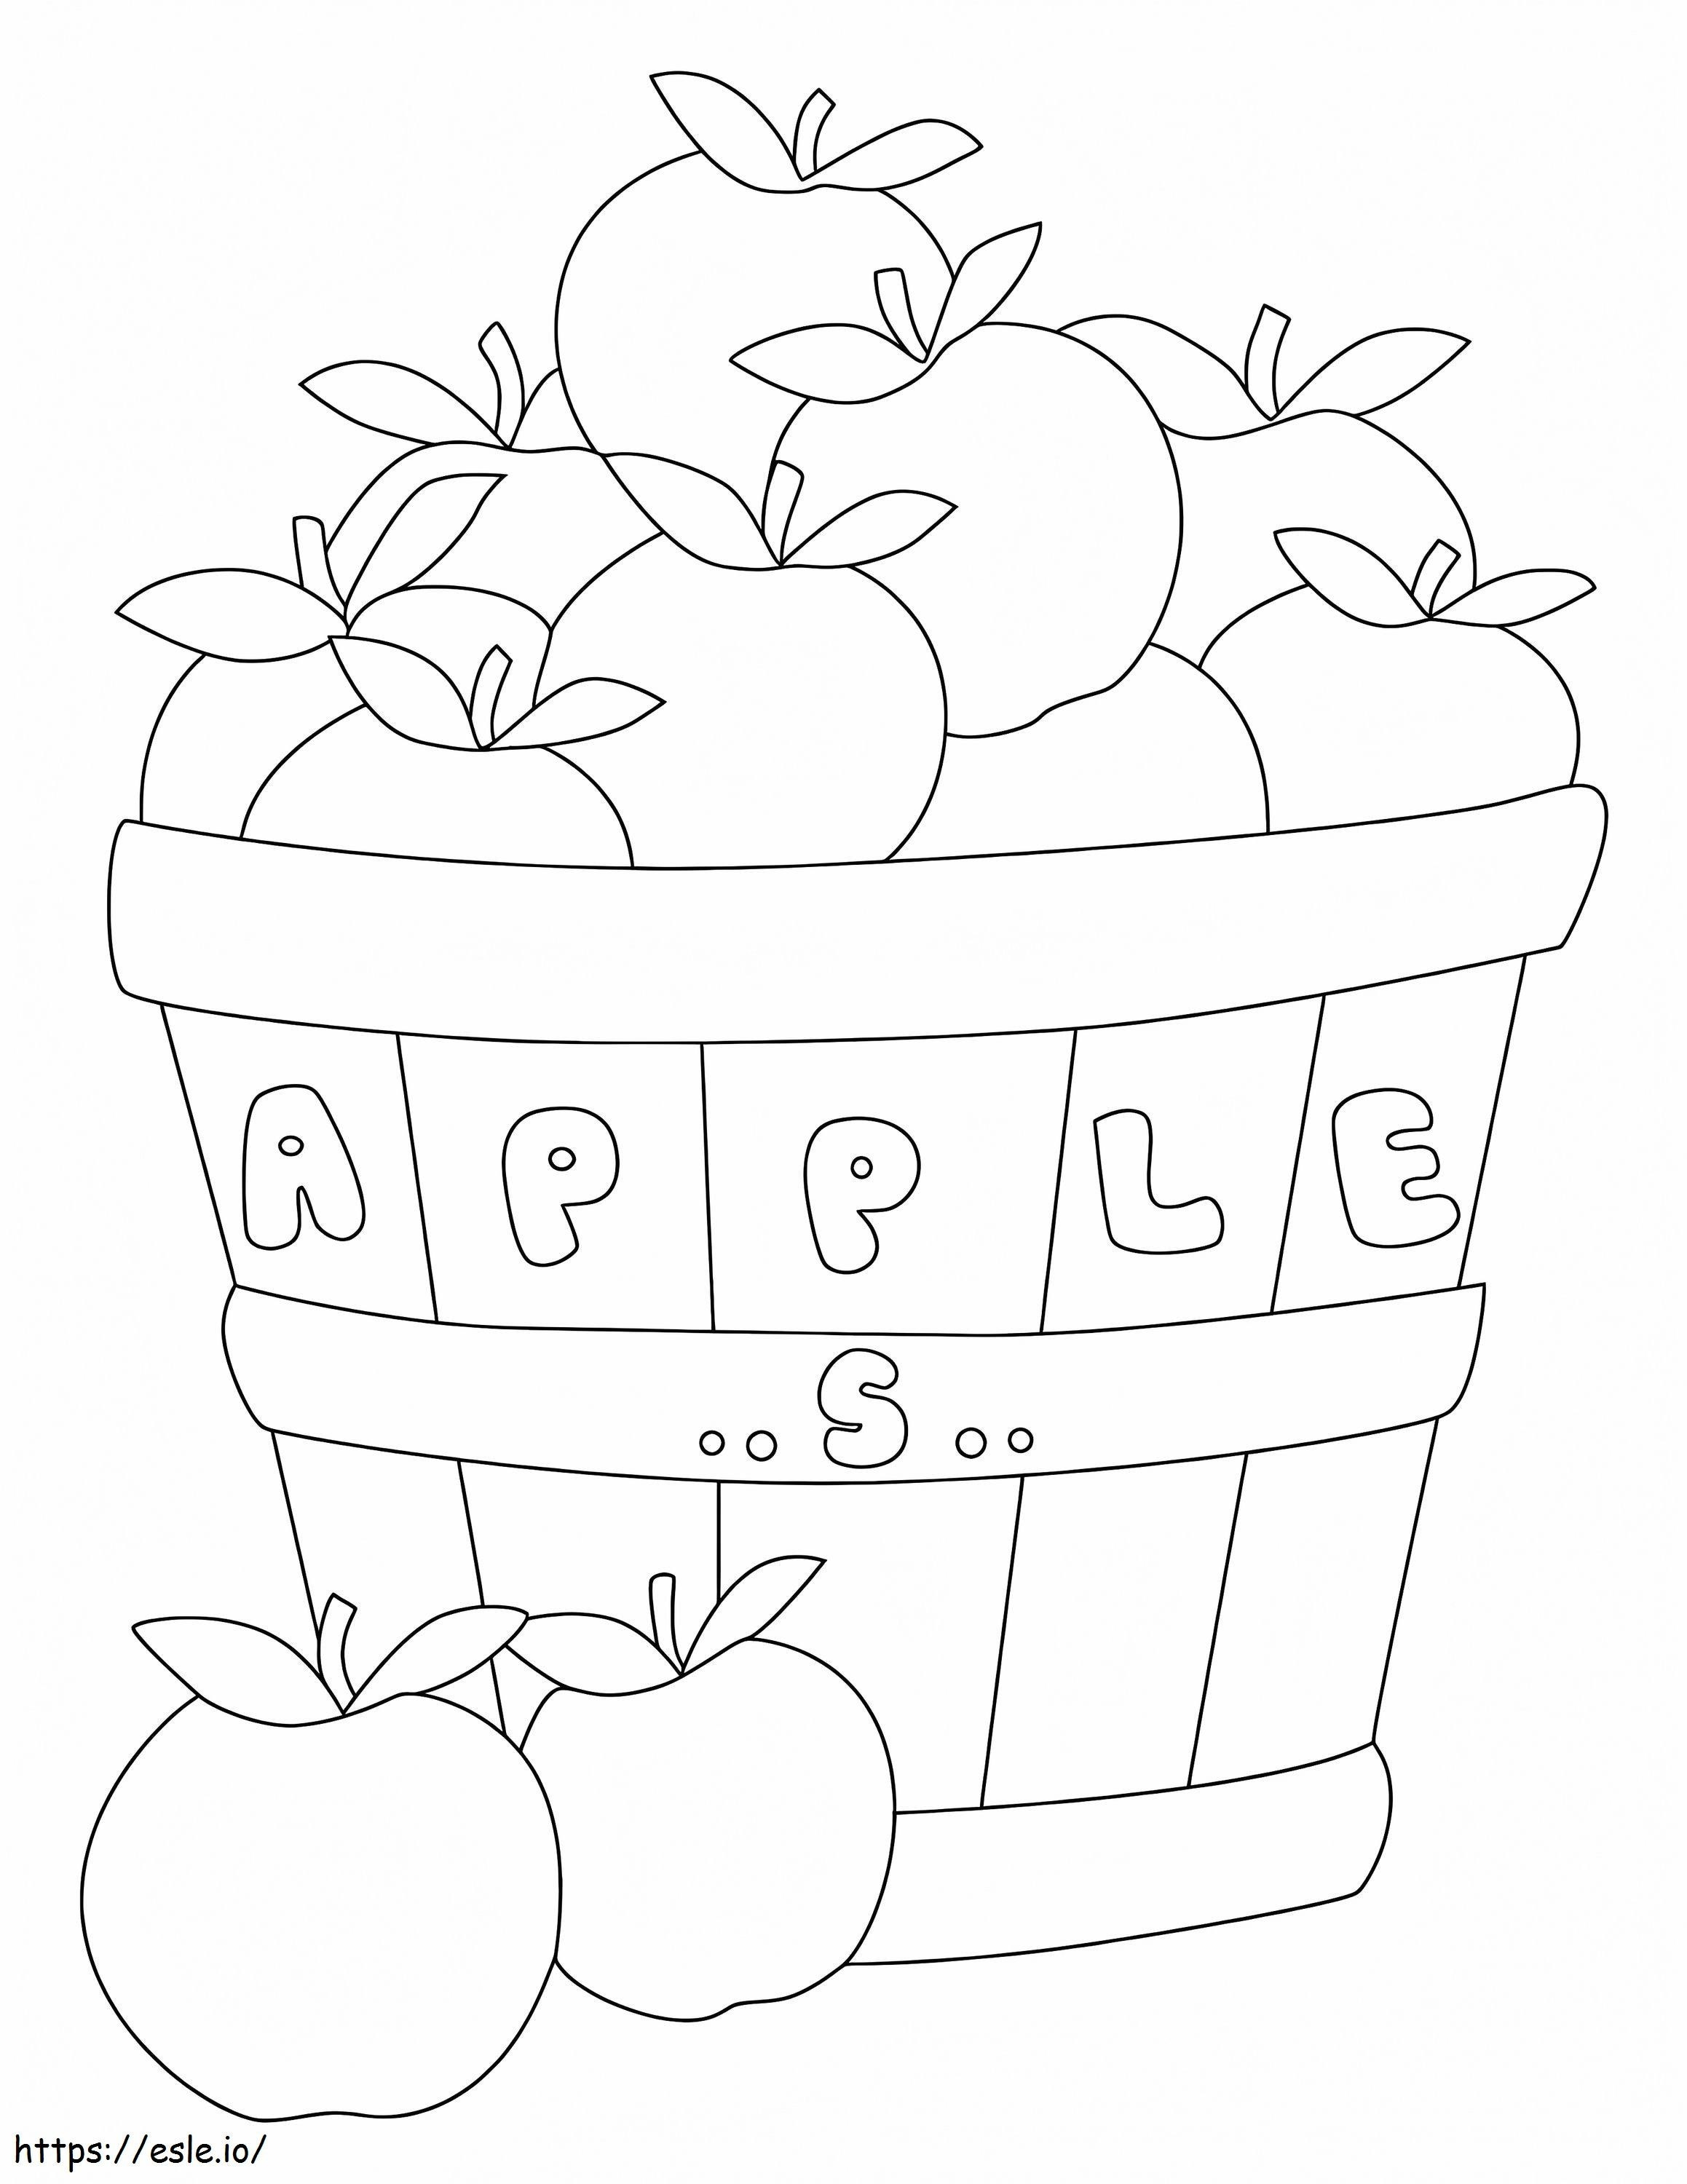 O cutie de mere și două mere de colorat